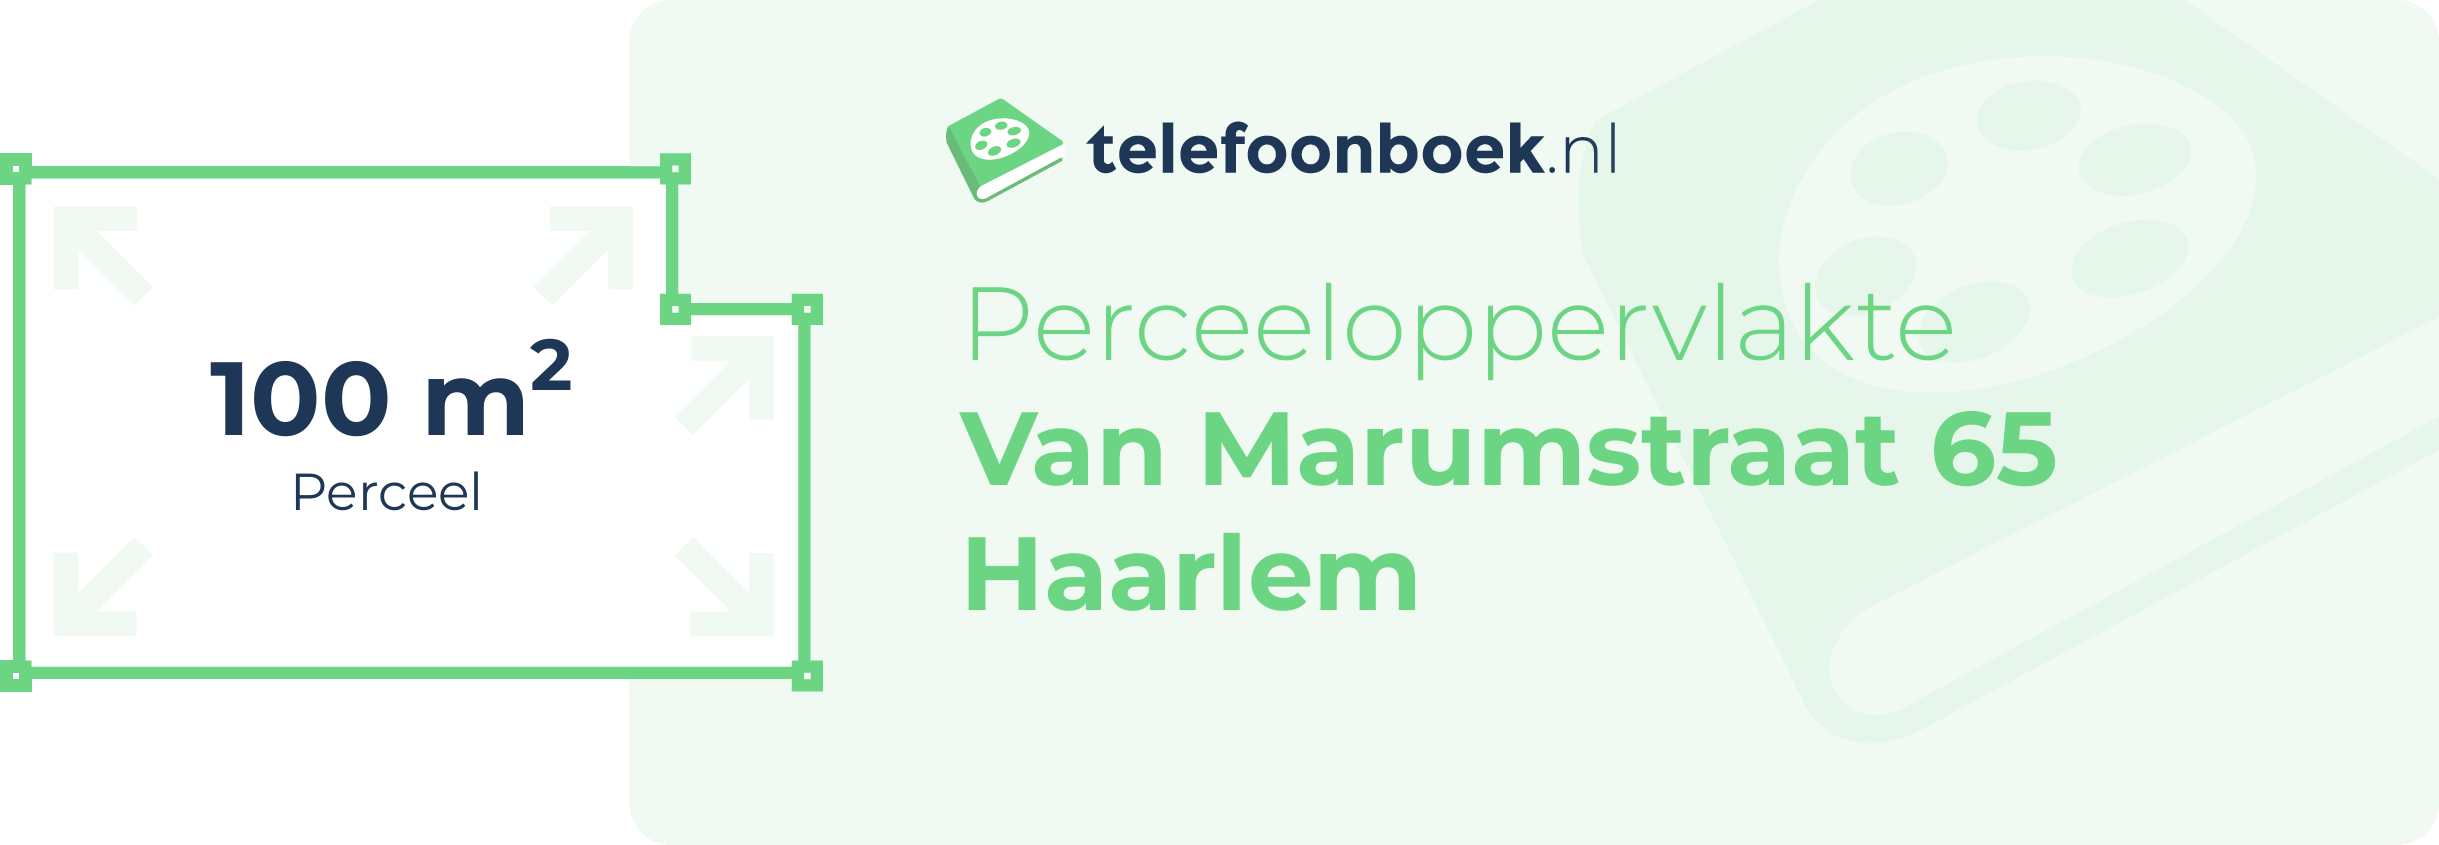 Perceeloppervlakte Van Marumstraat 65 Haarlem